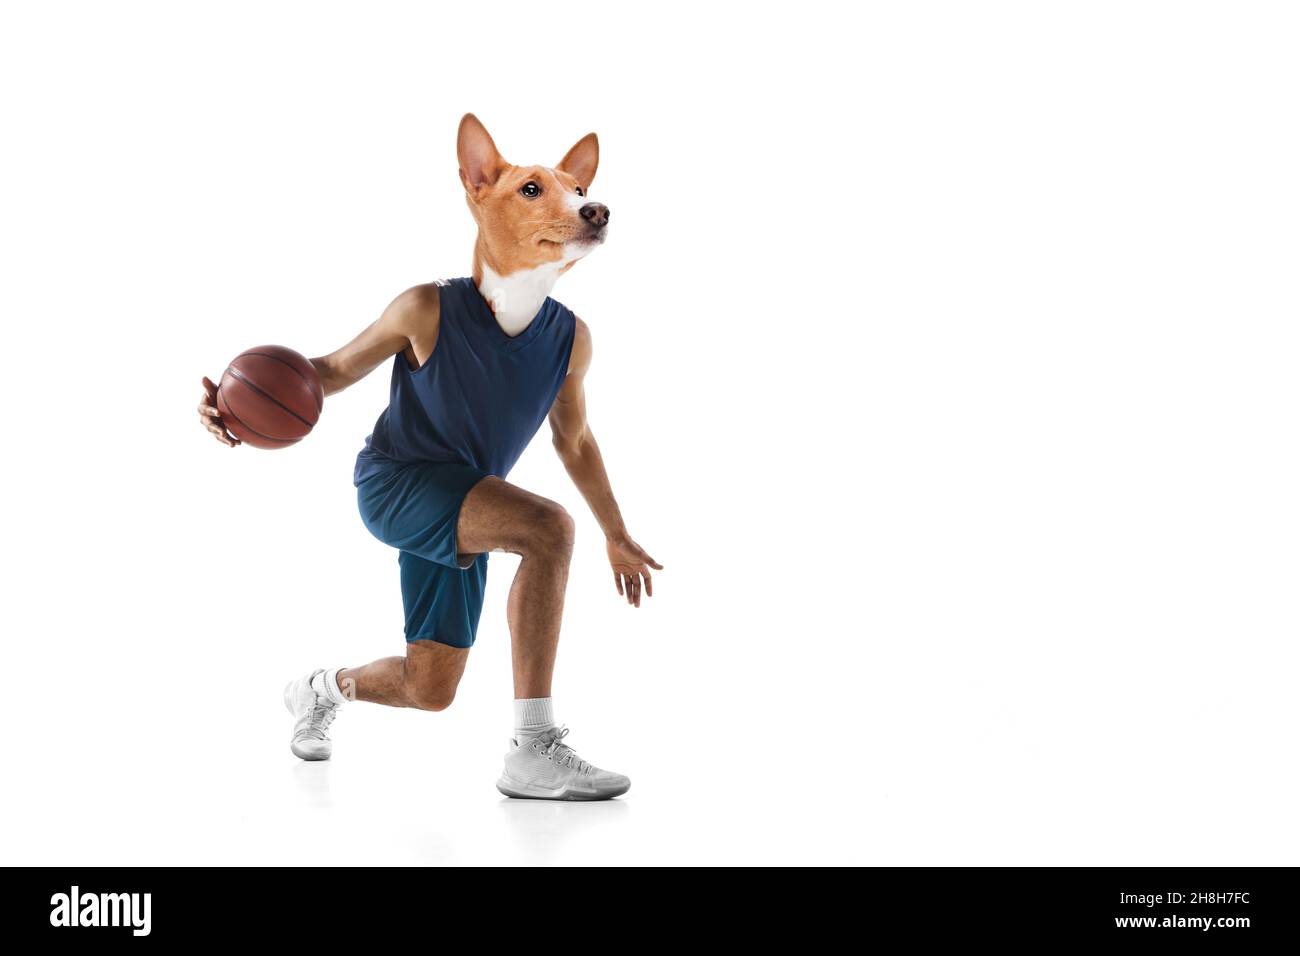 Œuvres d'art contemporaines, collage conceptuel.Jeune homme, joueur professionnel de basket-ball dirigé par la tête de chien.Surréalisme Banque D'Images